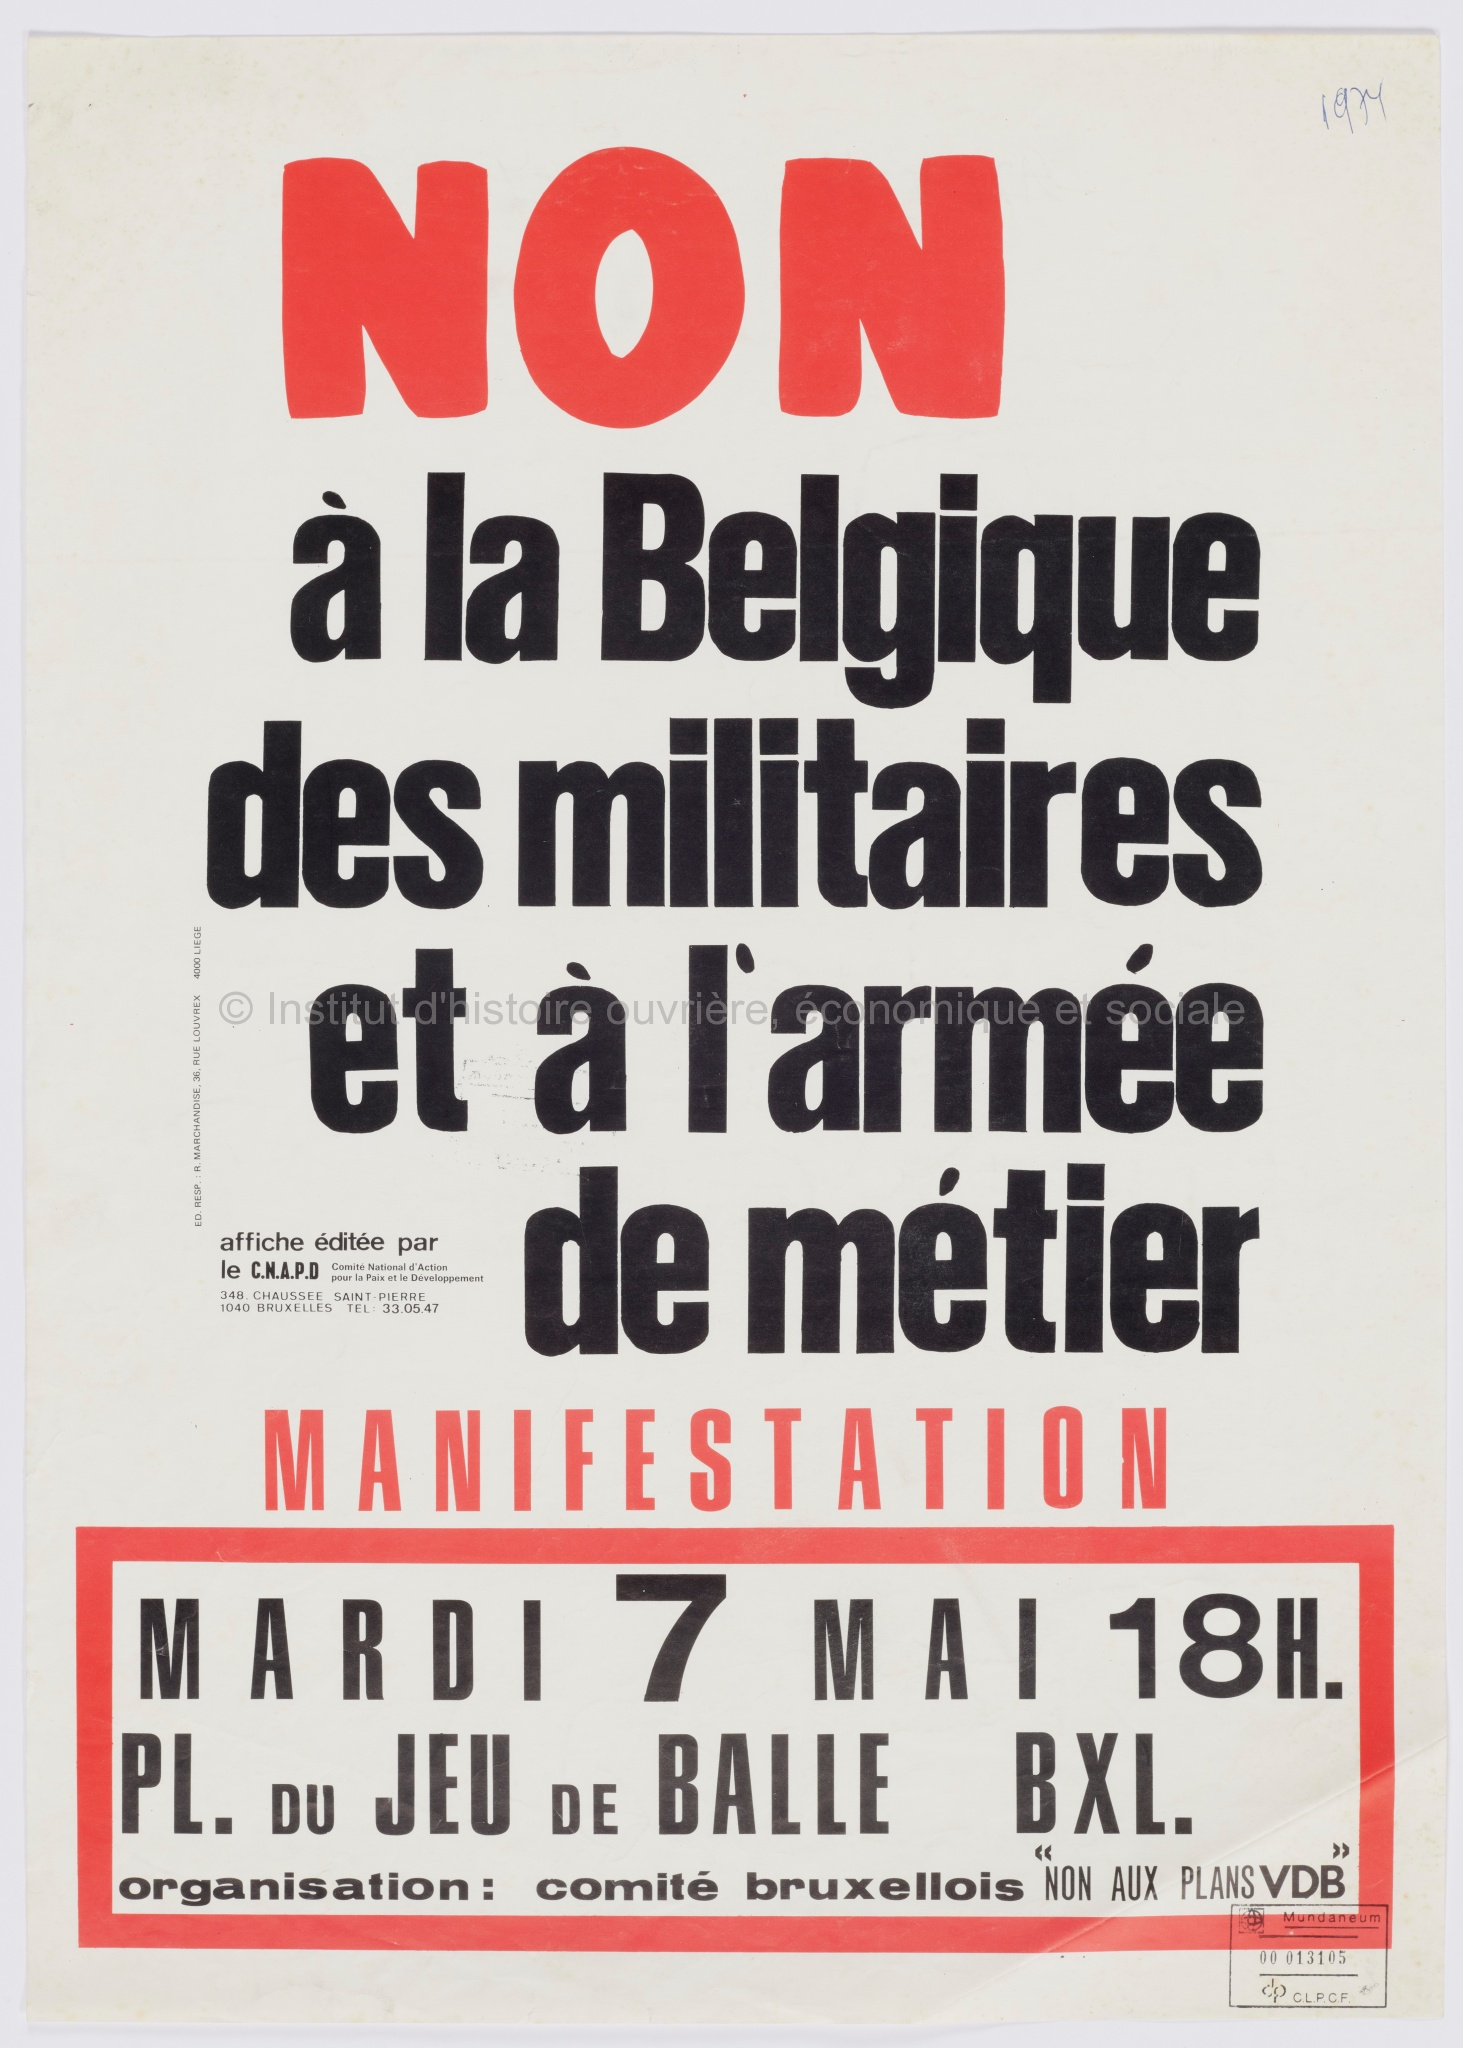 Non à la Belgique des militaires et à l'armée de métier : manifestation, mardi 7 mai 18h